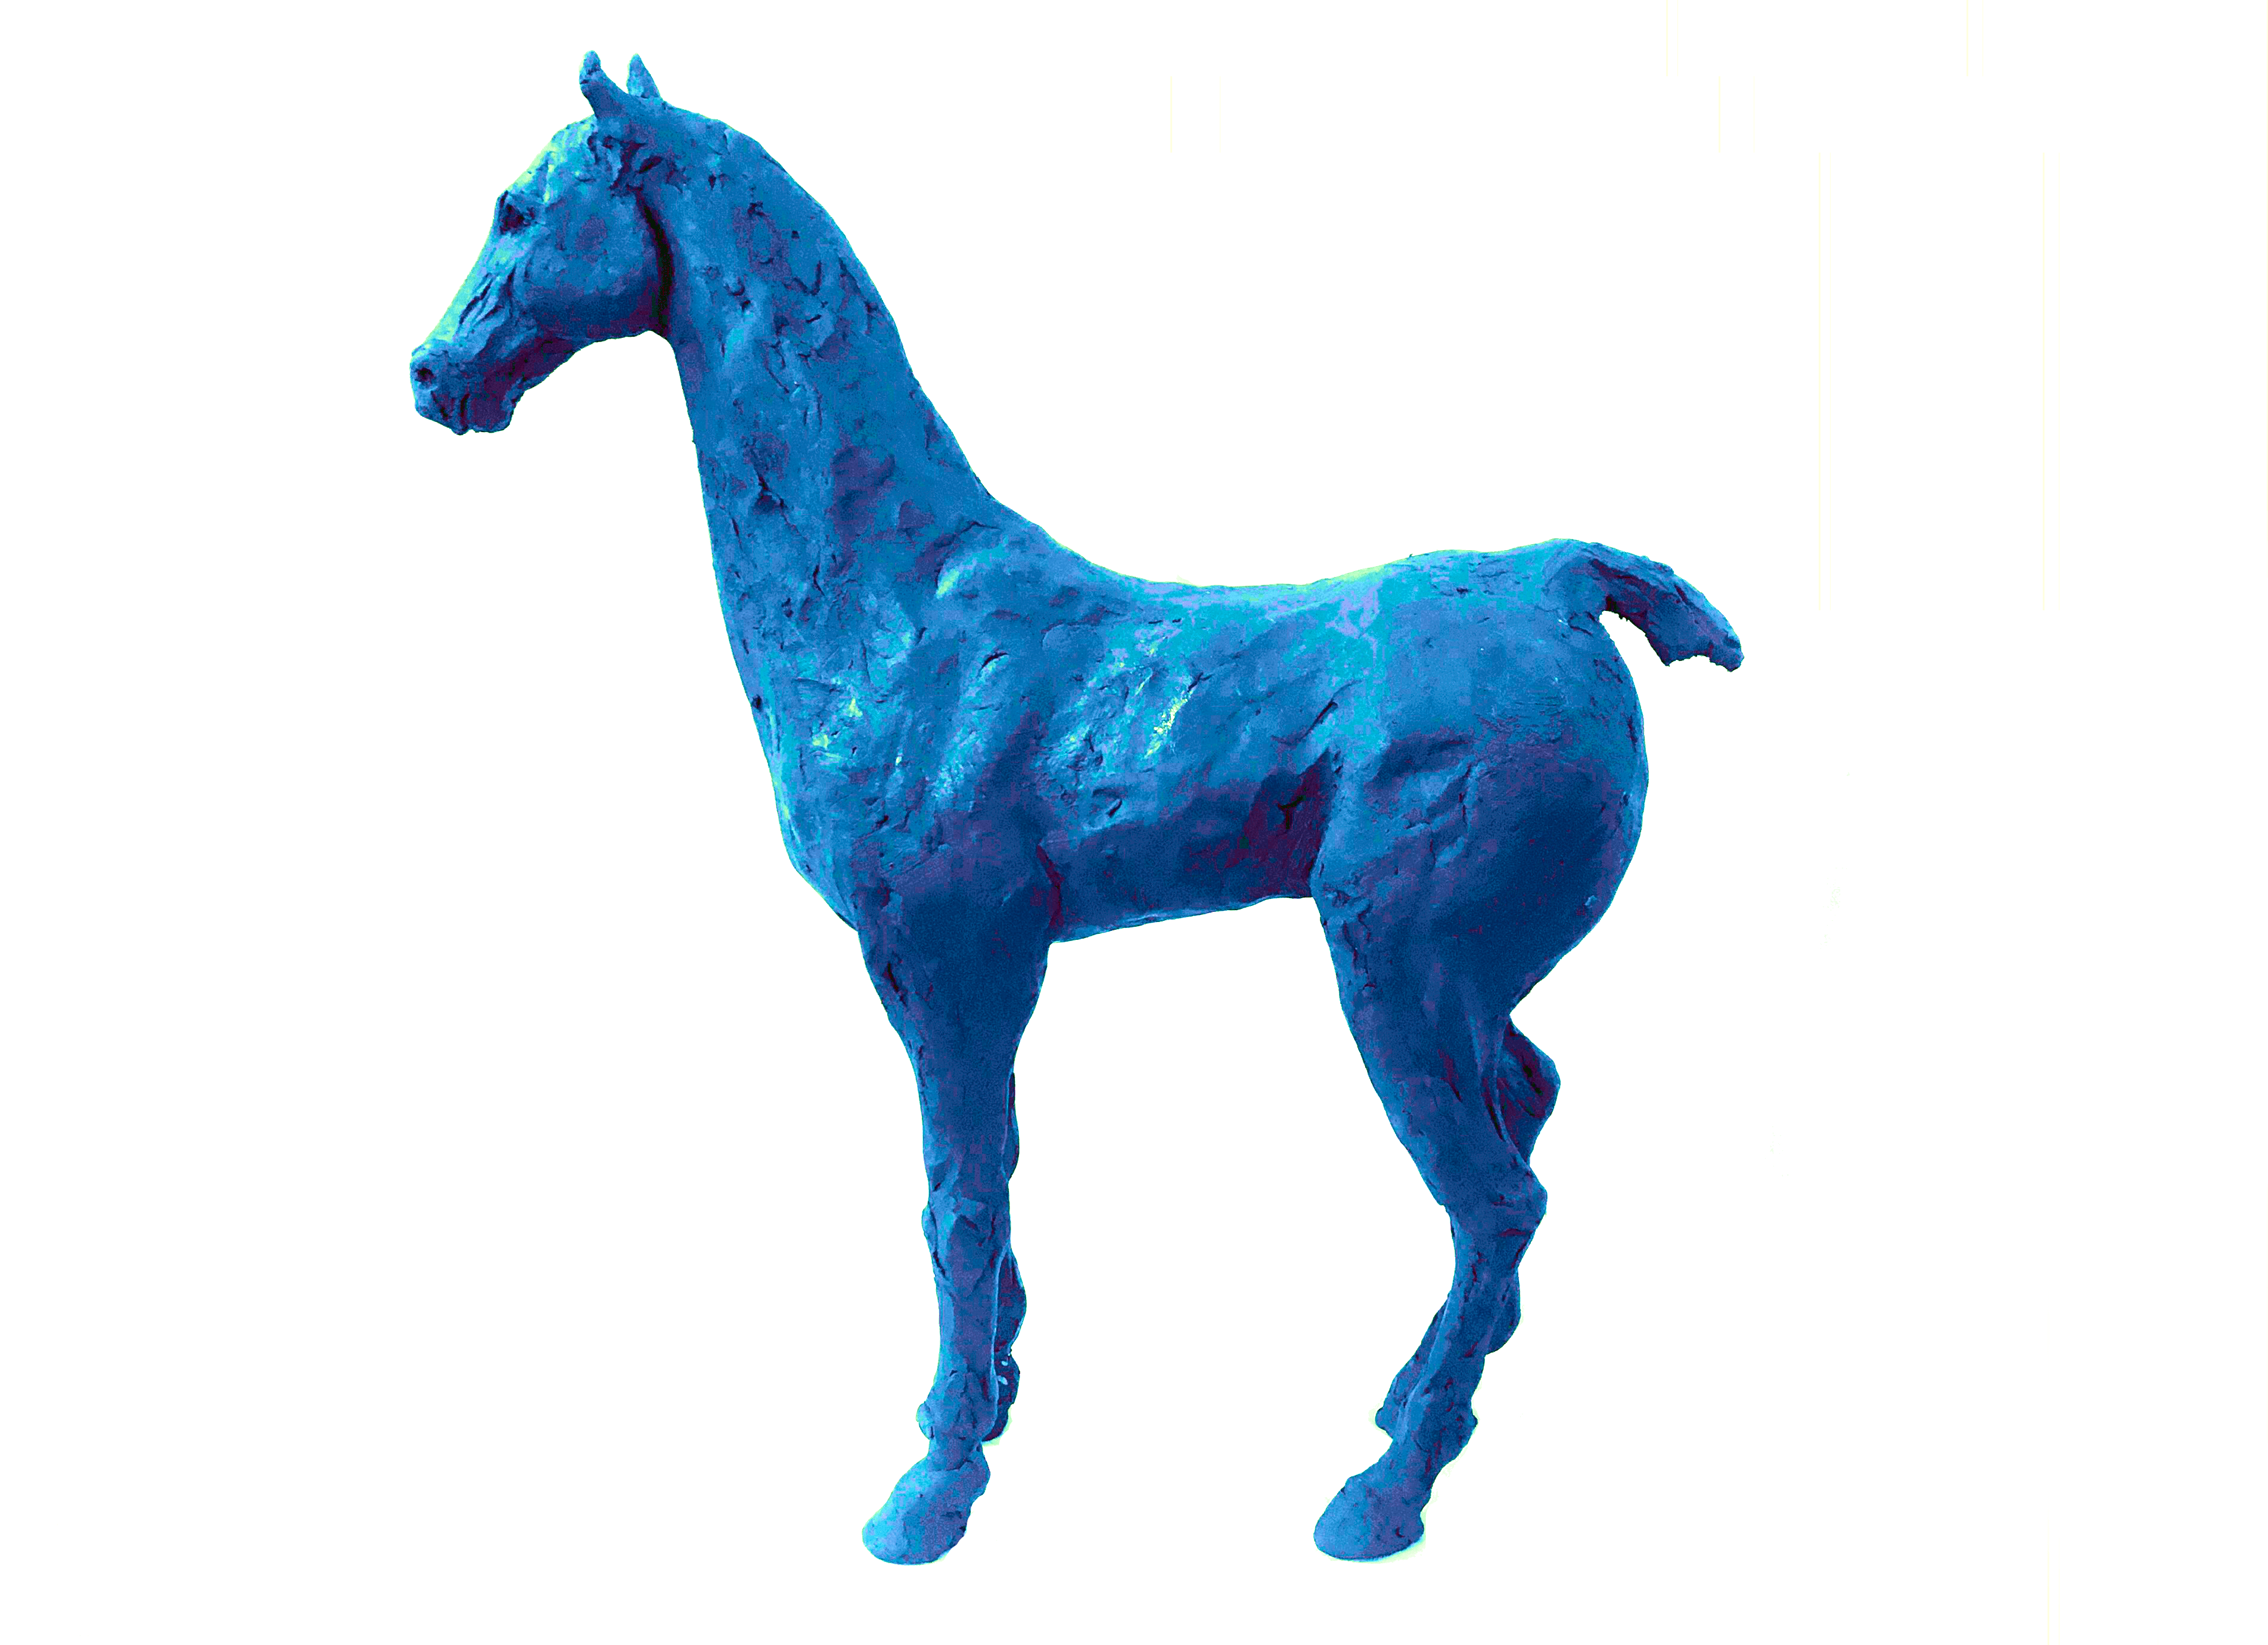 Blue Horse II